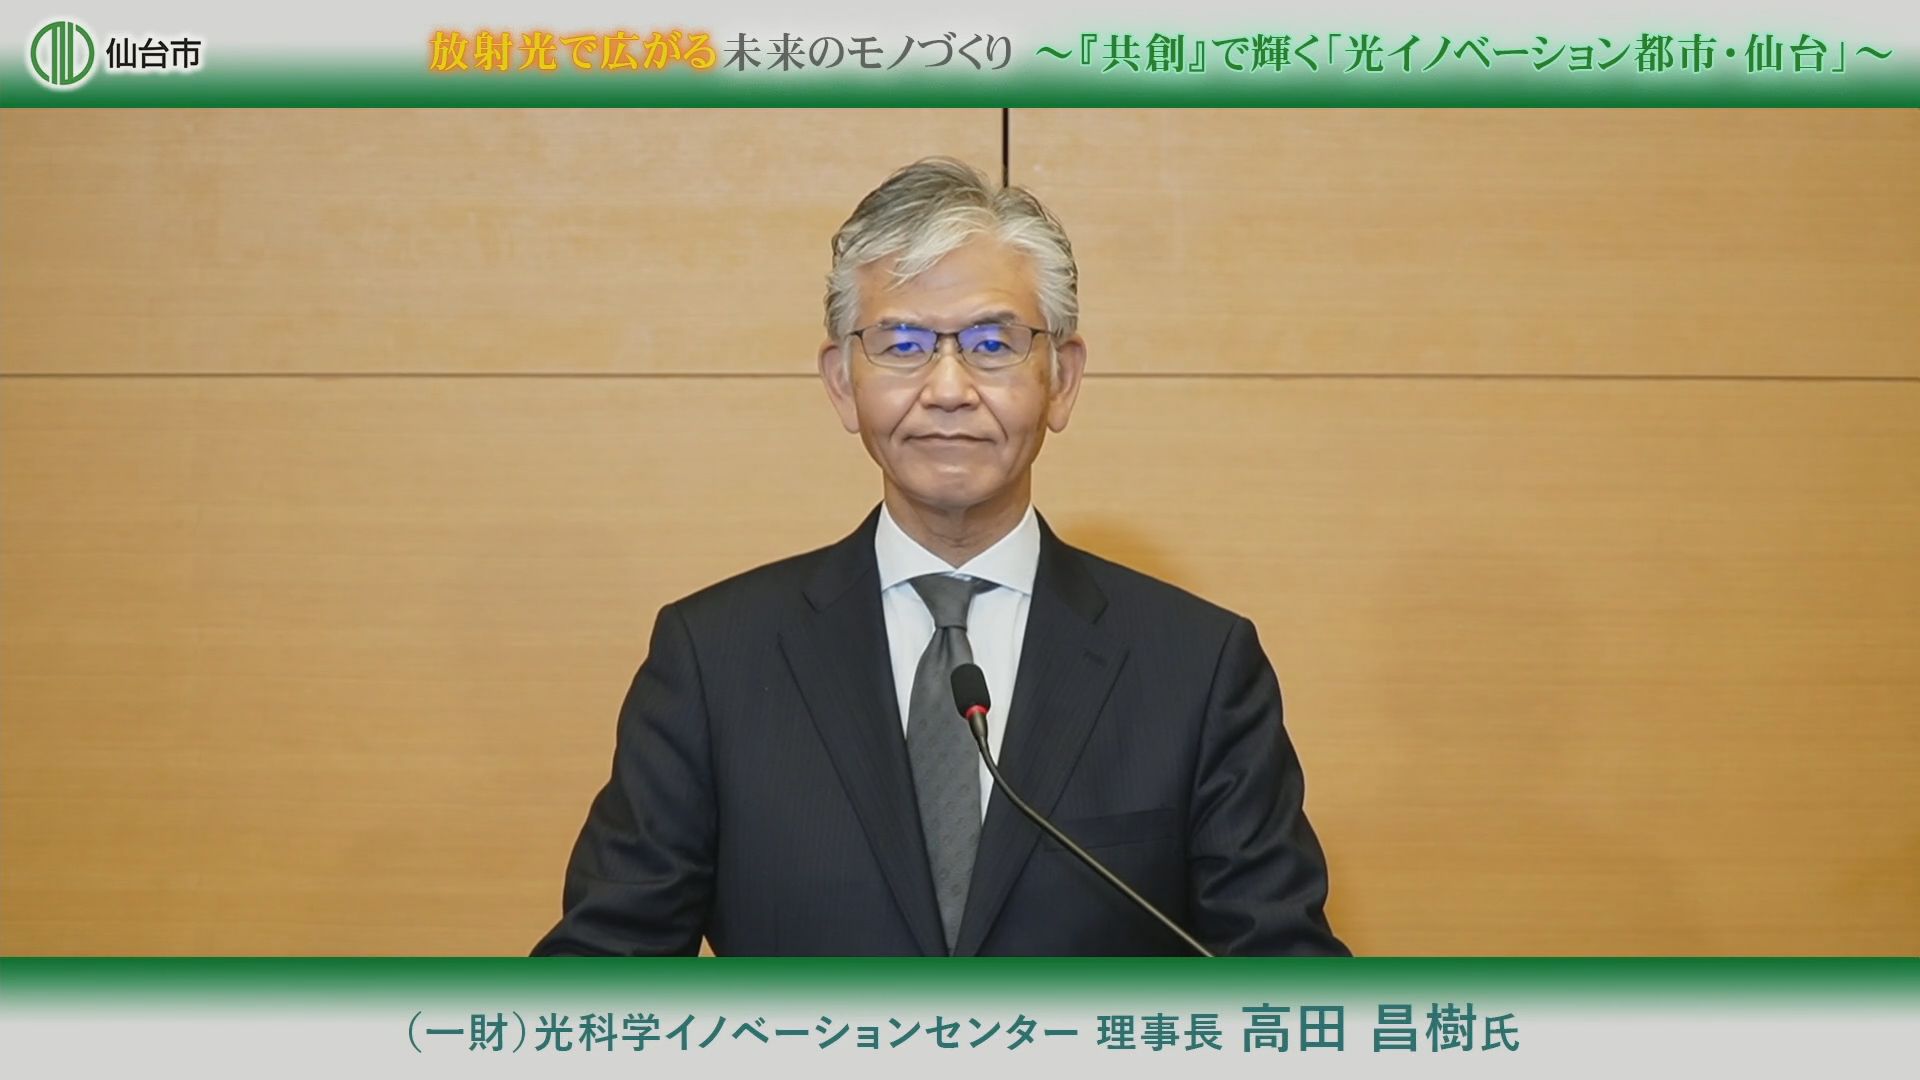 ナノテラスを運営する光科学イノベーションセンターの高田昌樹理事長。